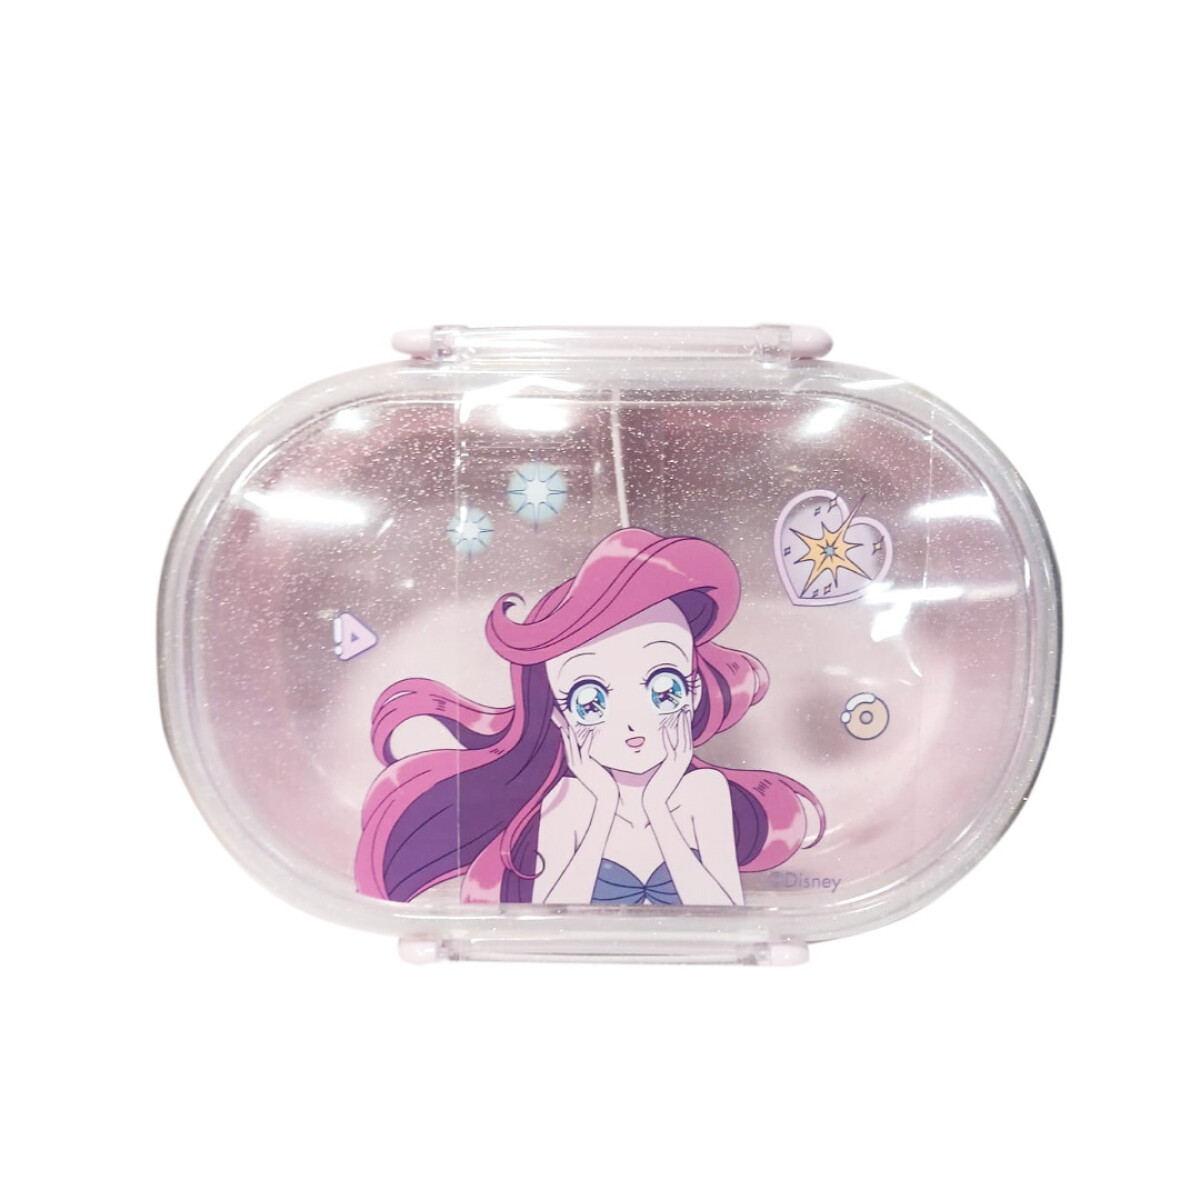 Bento box princesas manga 650ml - Ariel 